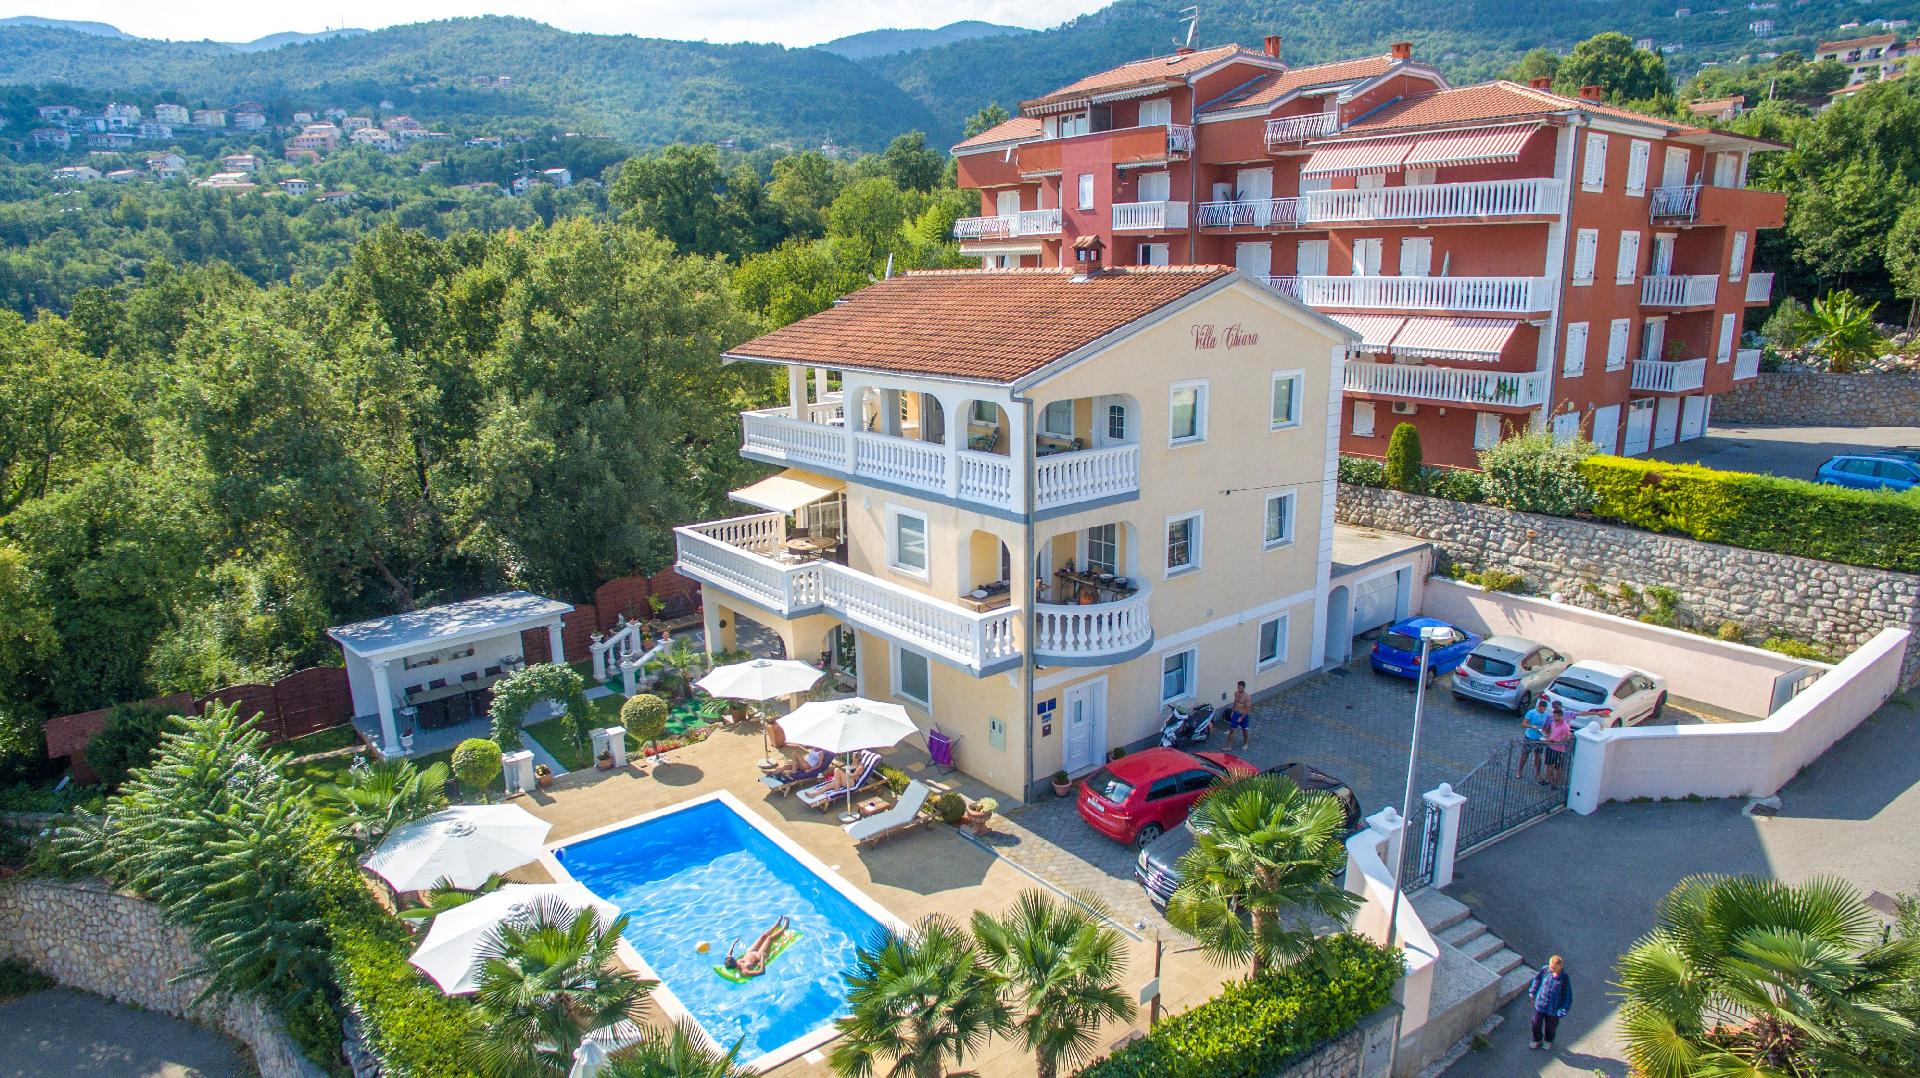 Ferienwohnung für 2 Personen ca. 30 m² i Ferienhaus in Kroatien